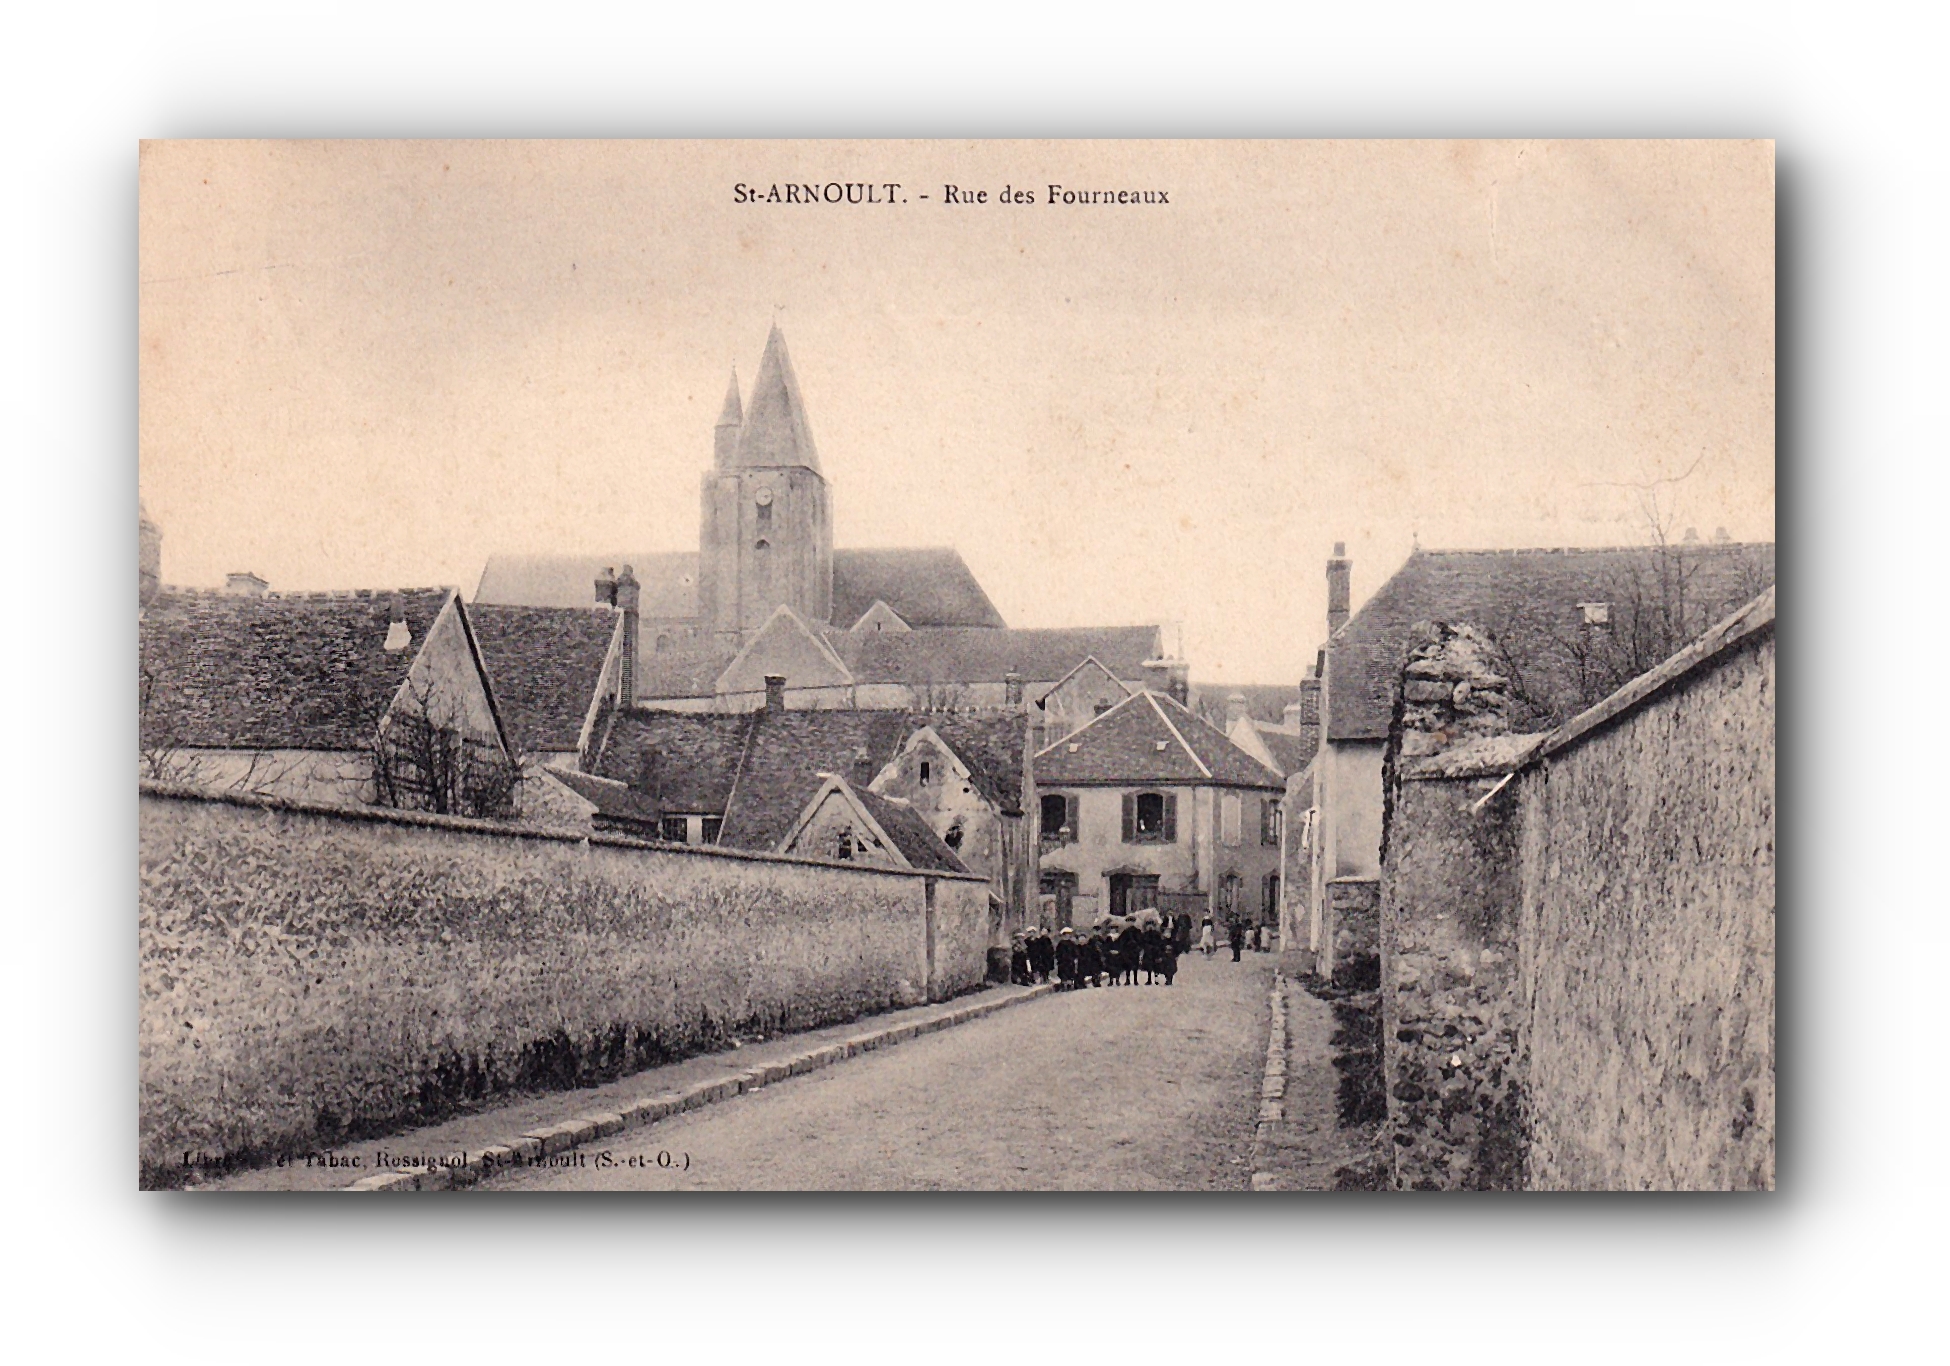 - Rue des Fourneaux - St. ARNOULT - 13.12.1905 -